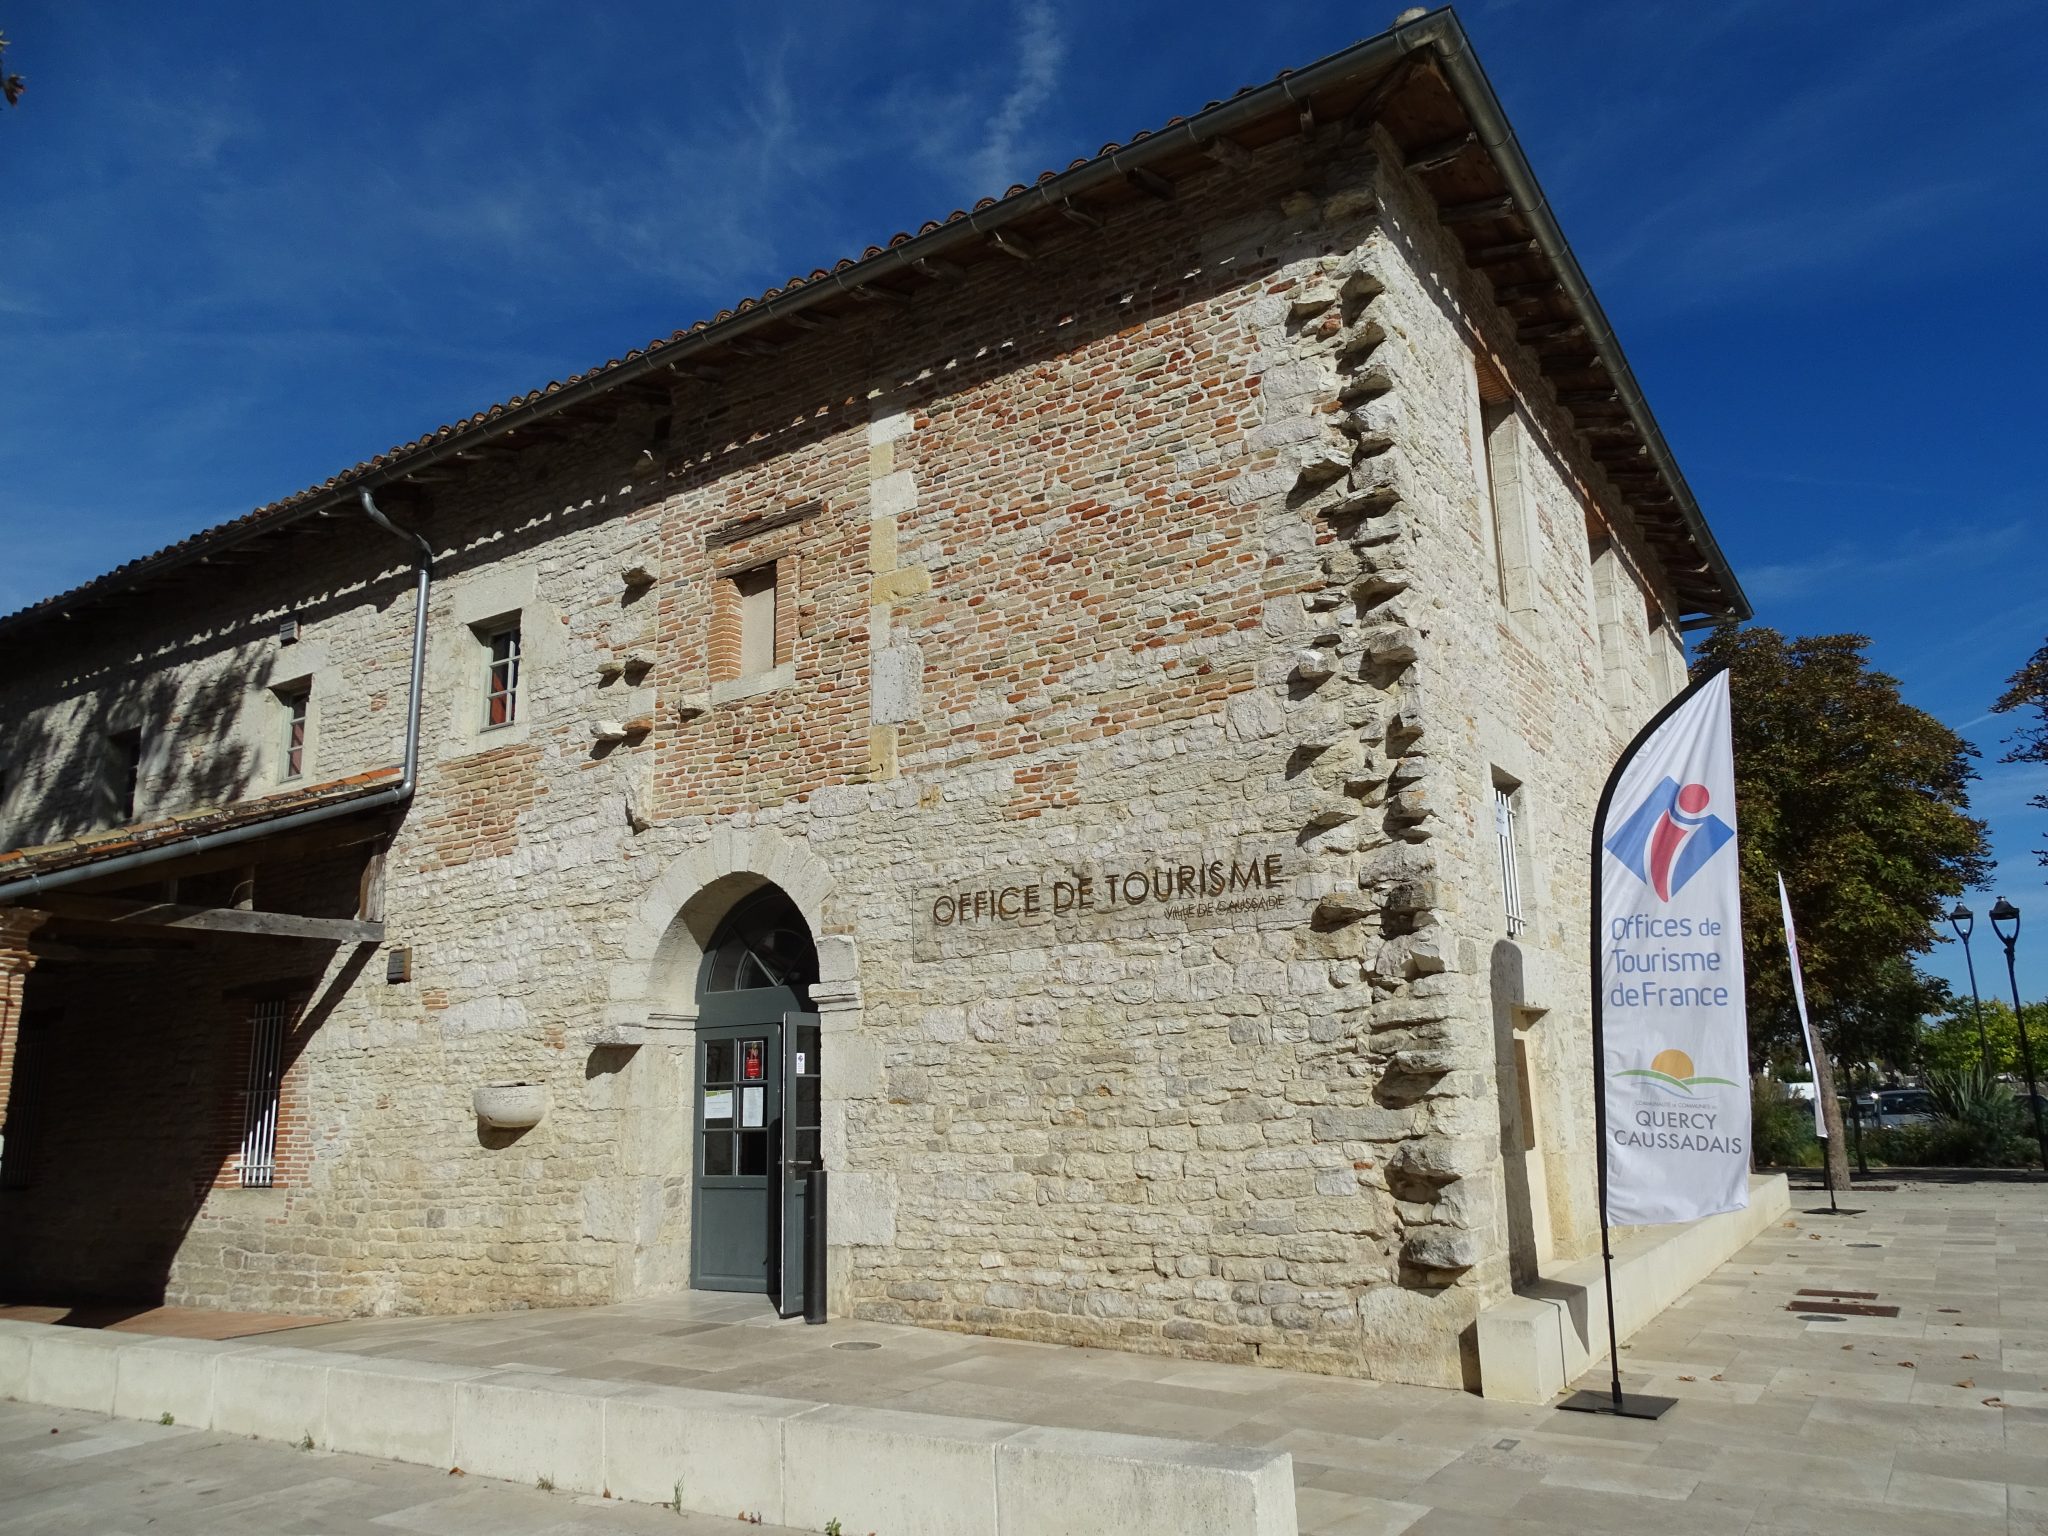 Office de Tourisme du Quercy Caussadais